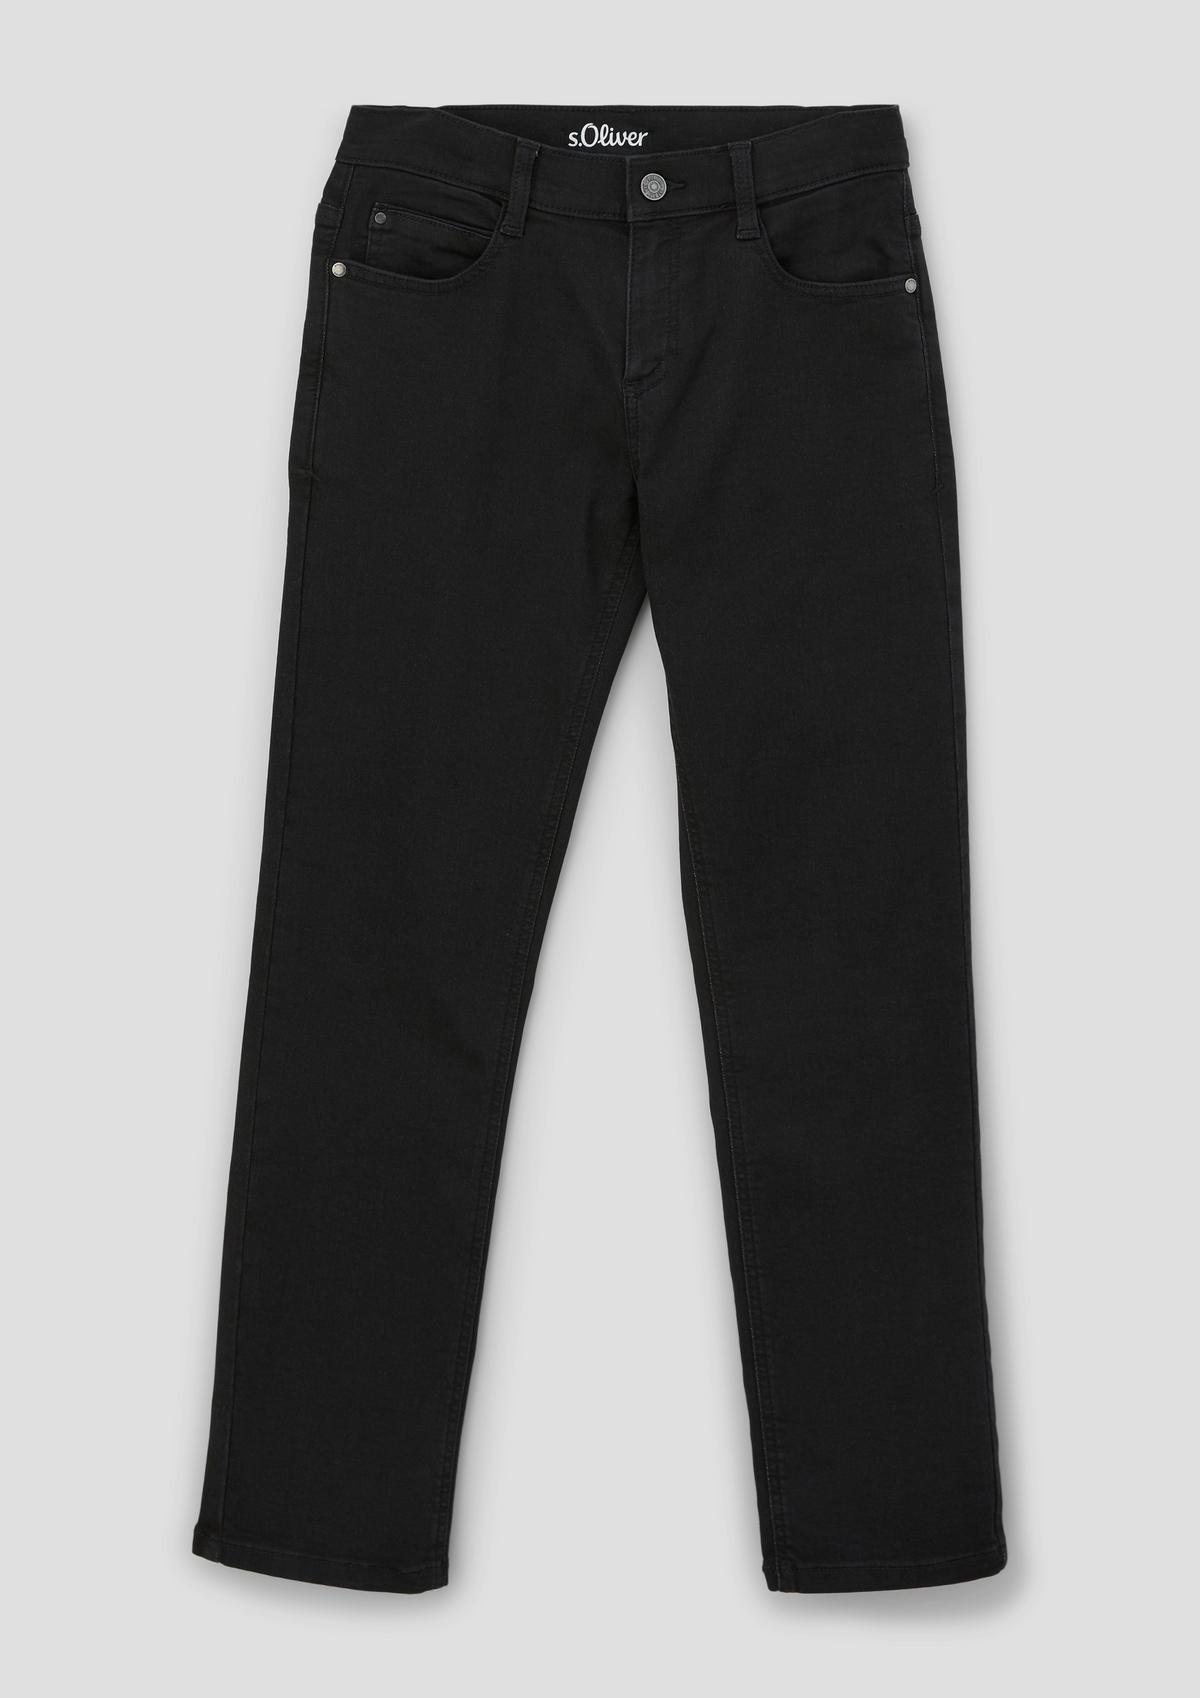 s.Oliver Pete jeans / regular fit / mid rise / slim leg / dobby denim